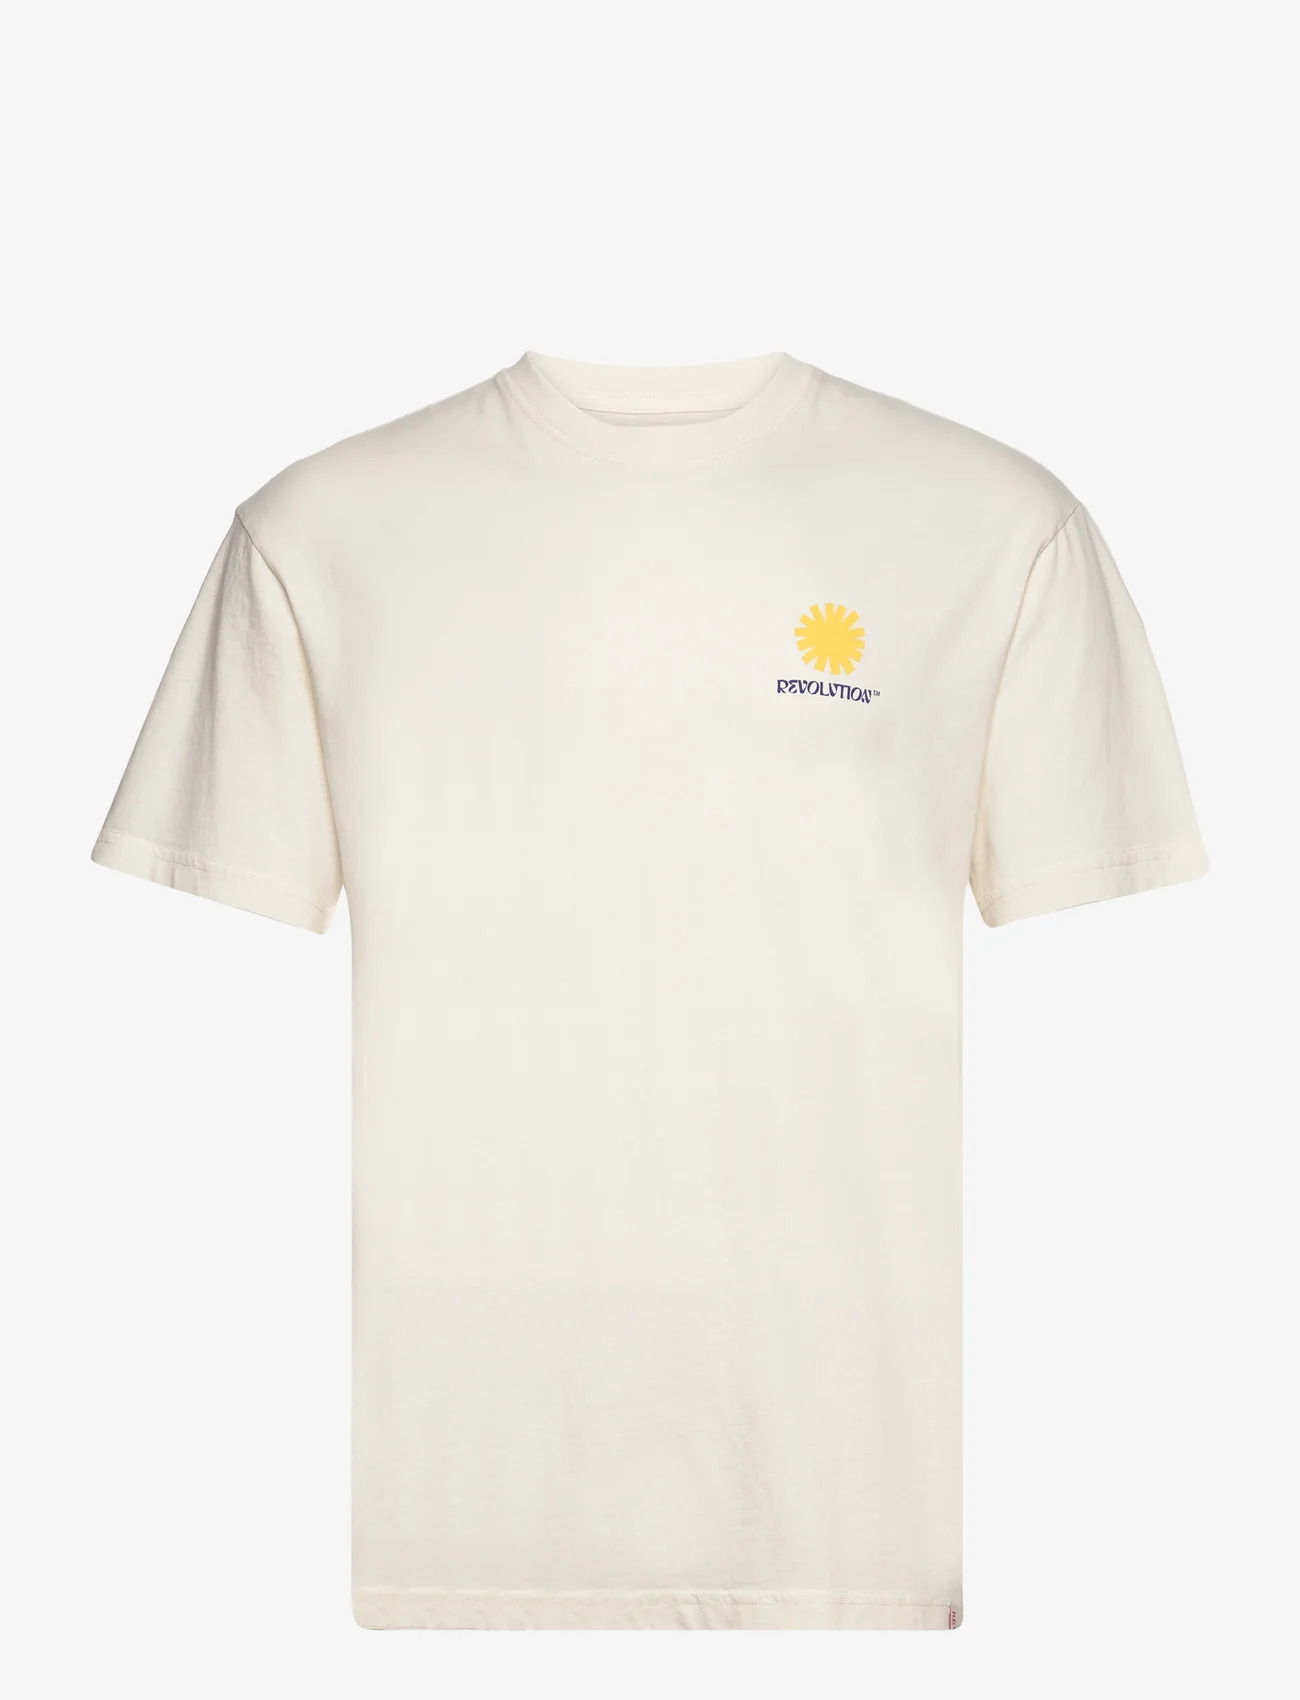 Revolution - Loose t-shirt - kortermede t-skjorter - offwhite - 0